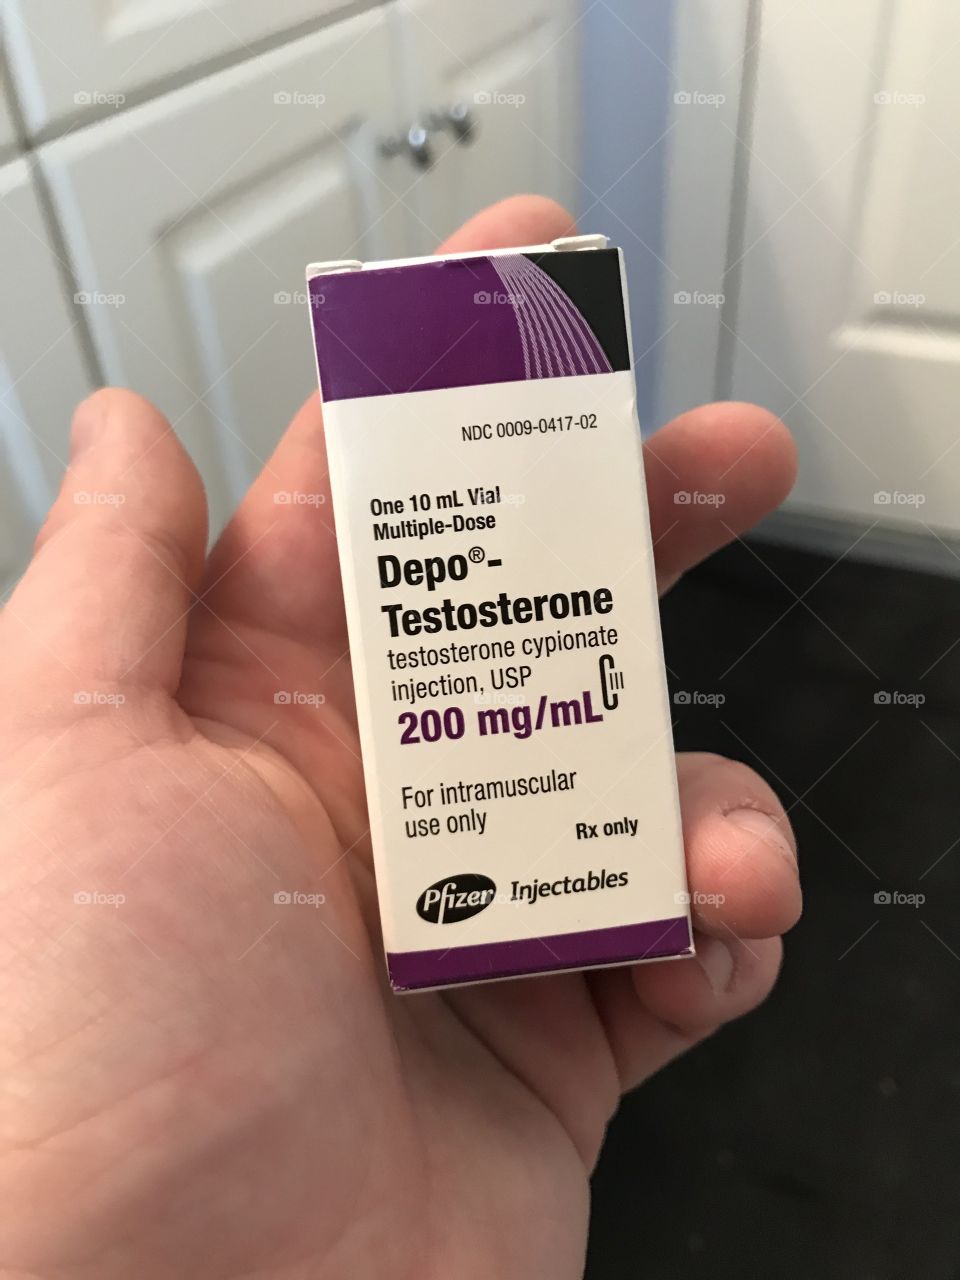 Depo-Testosterone is my best friend 